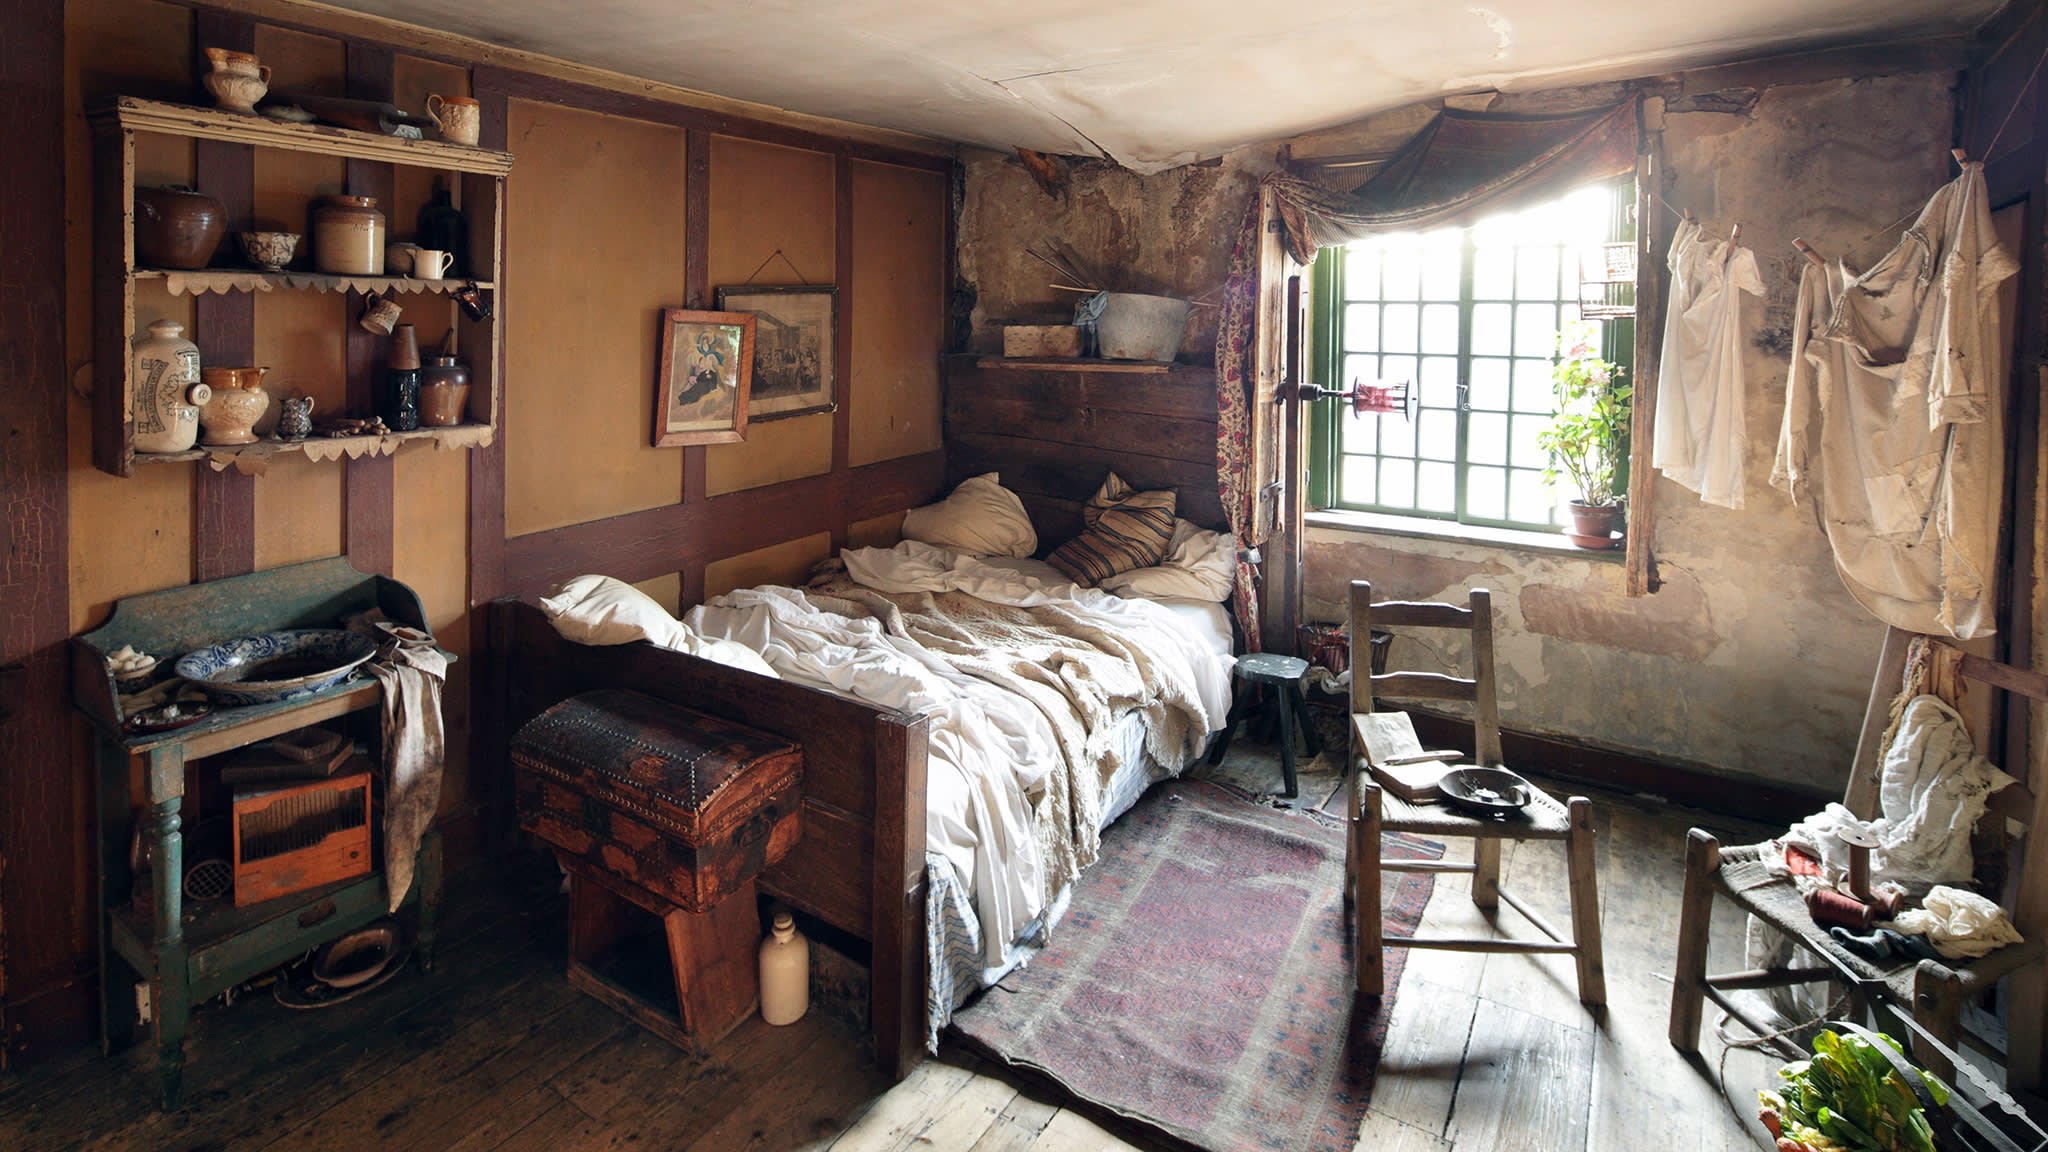 Обстановка ч. Спальня в бедном жилище 19 века в Англии. Жилища бедняков Лондон 19в. Бедный дом внутри. Бедная комната.